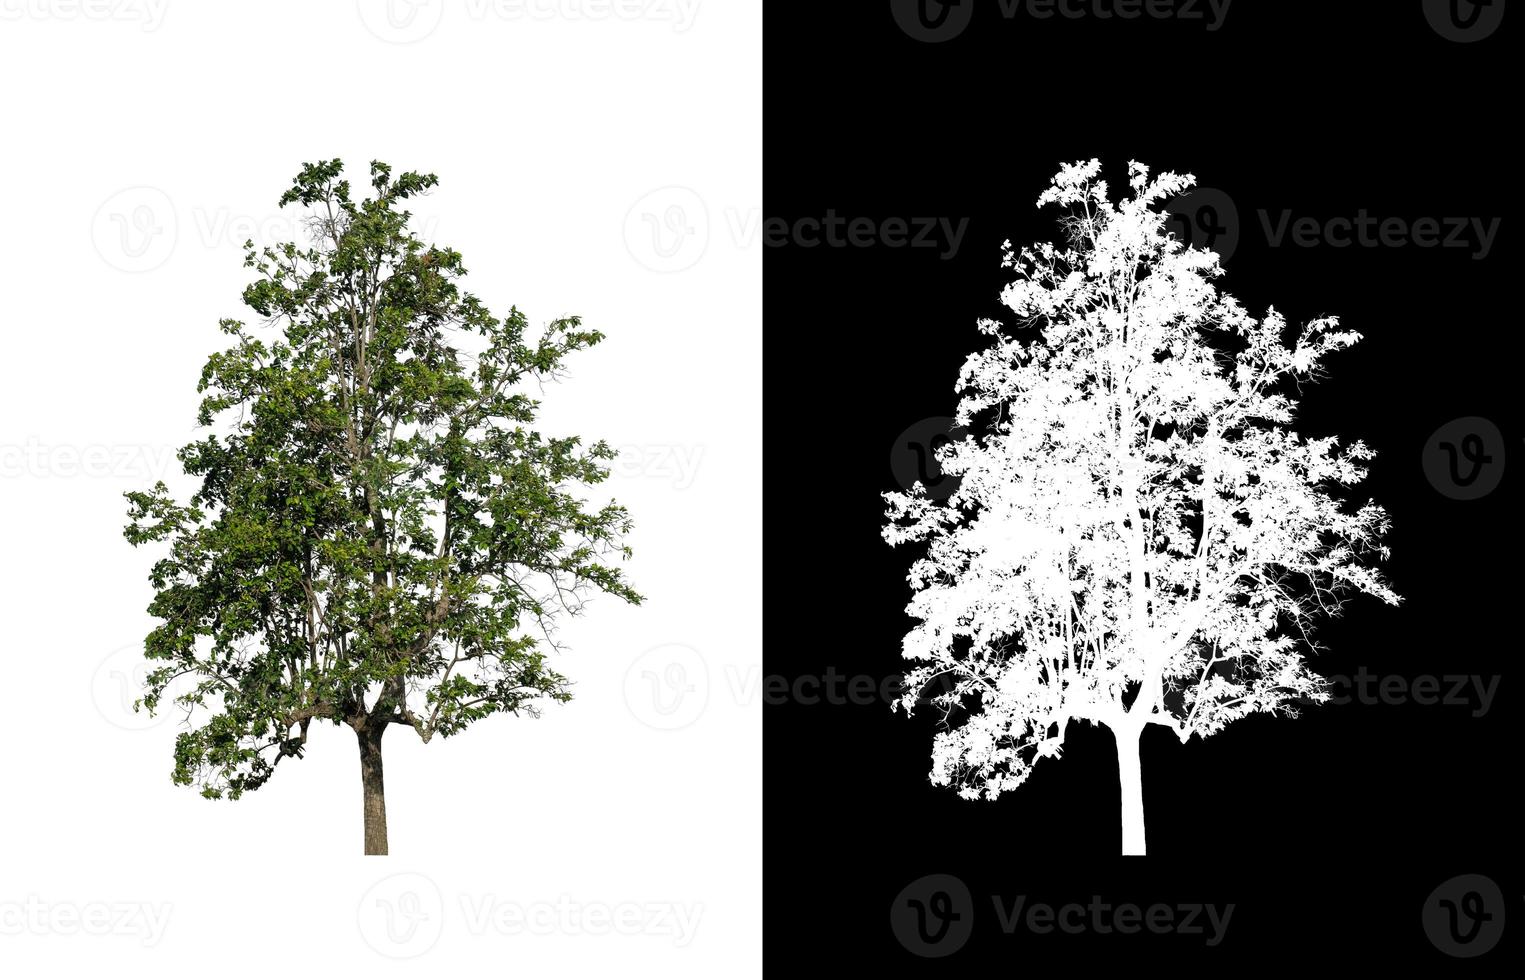 träd isolerat på vit bakgrund med klippning väg och alfa kanal foto